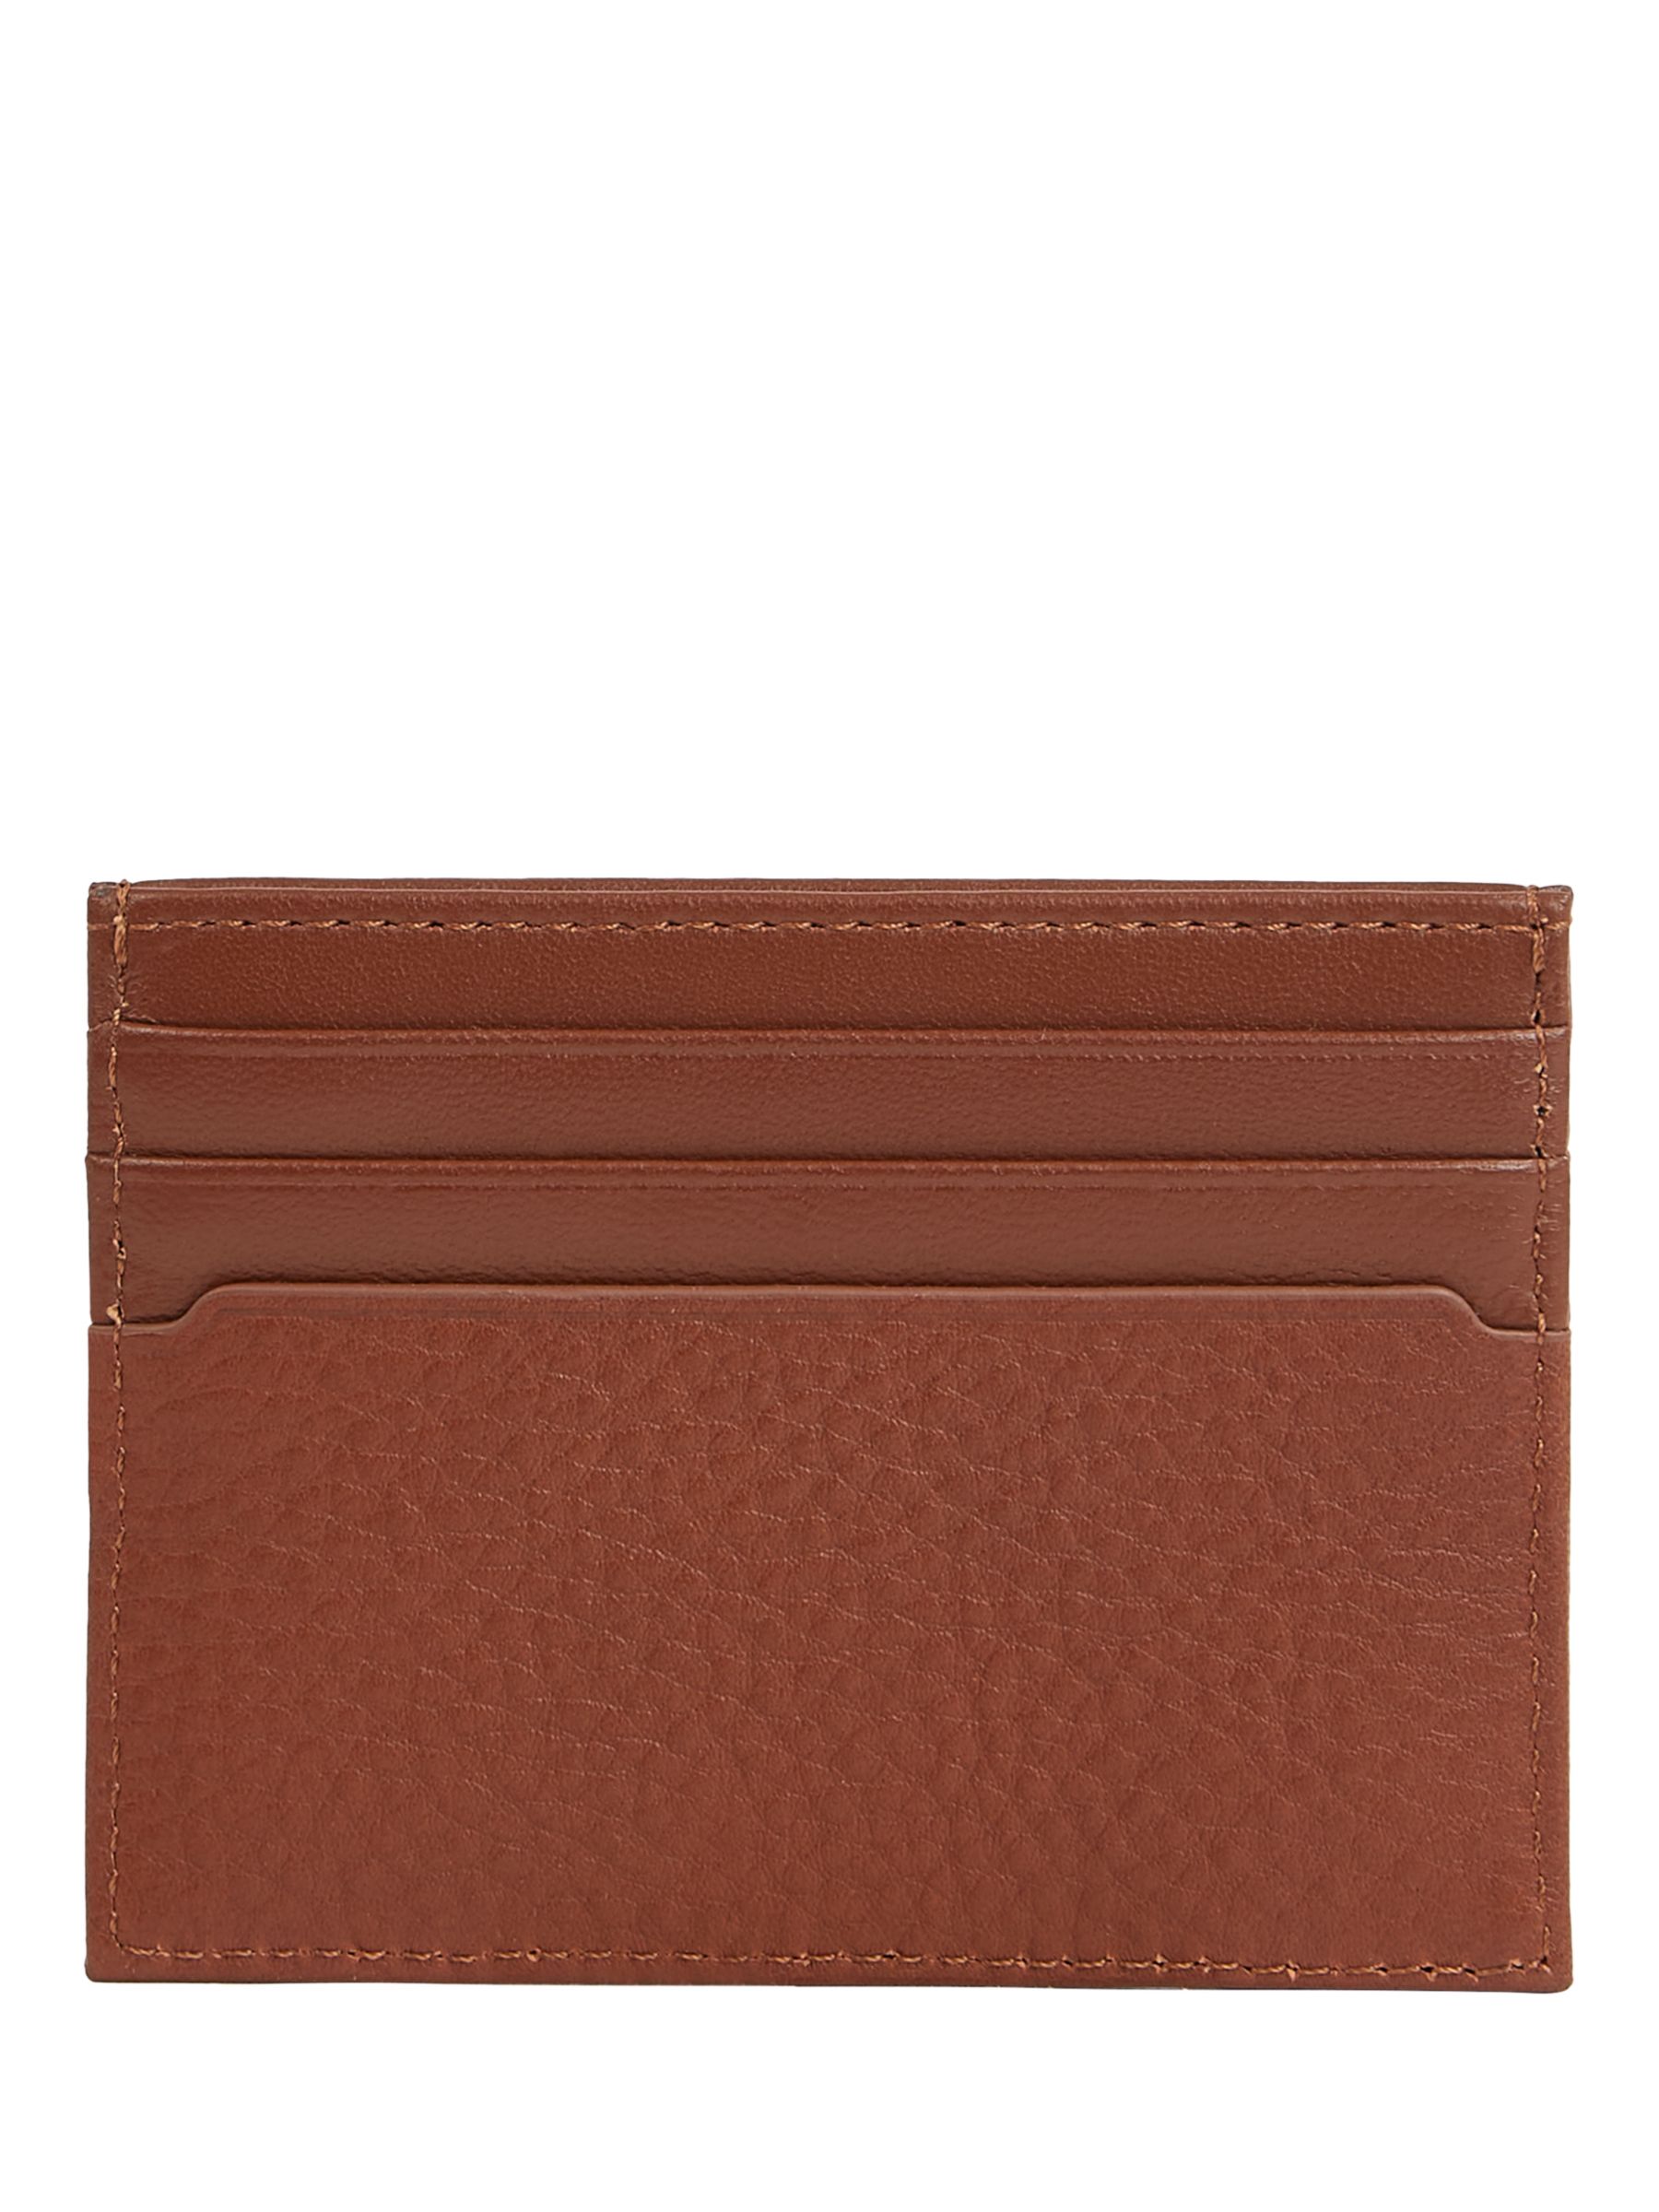 Tommy Hilfiger Premium Leather Card Holder, Brown Dark, One Size